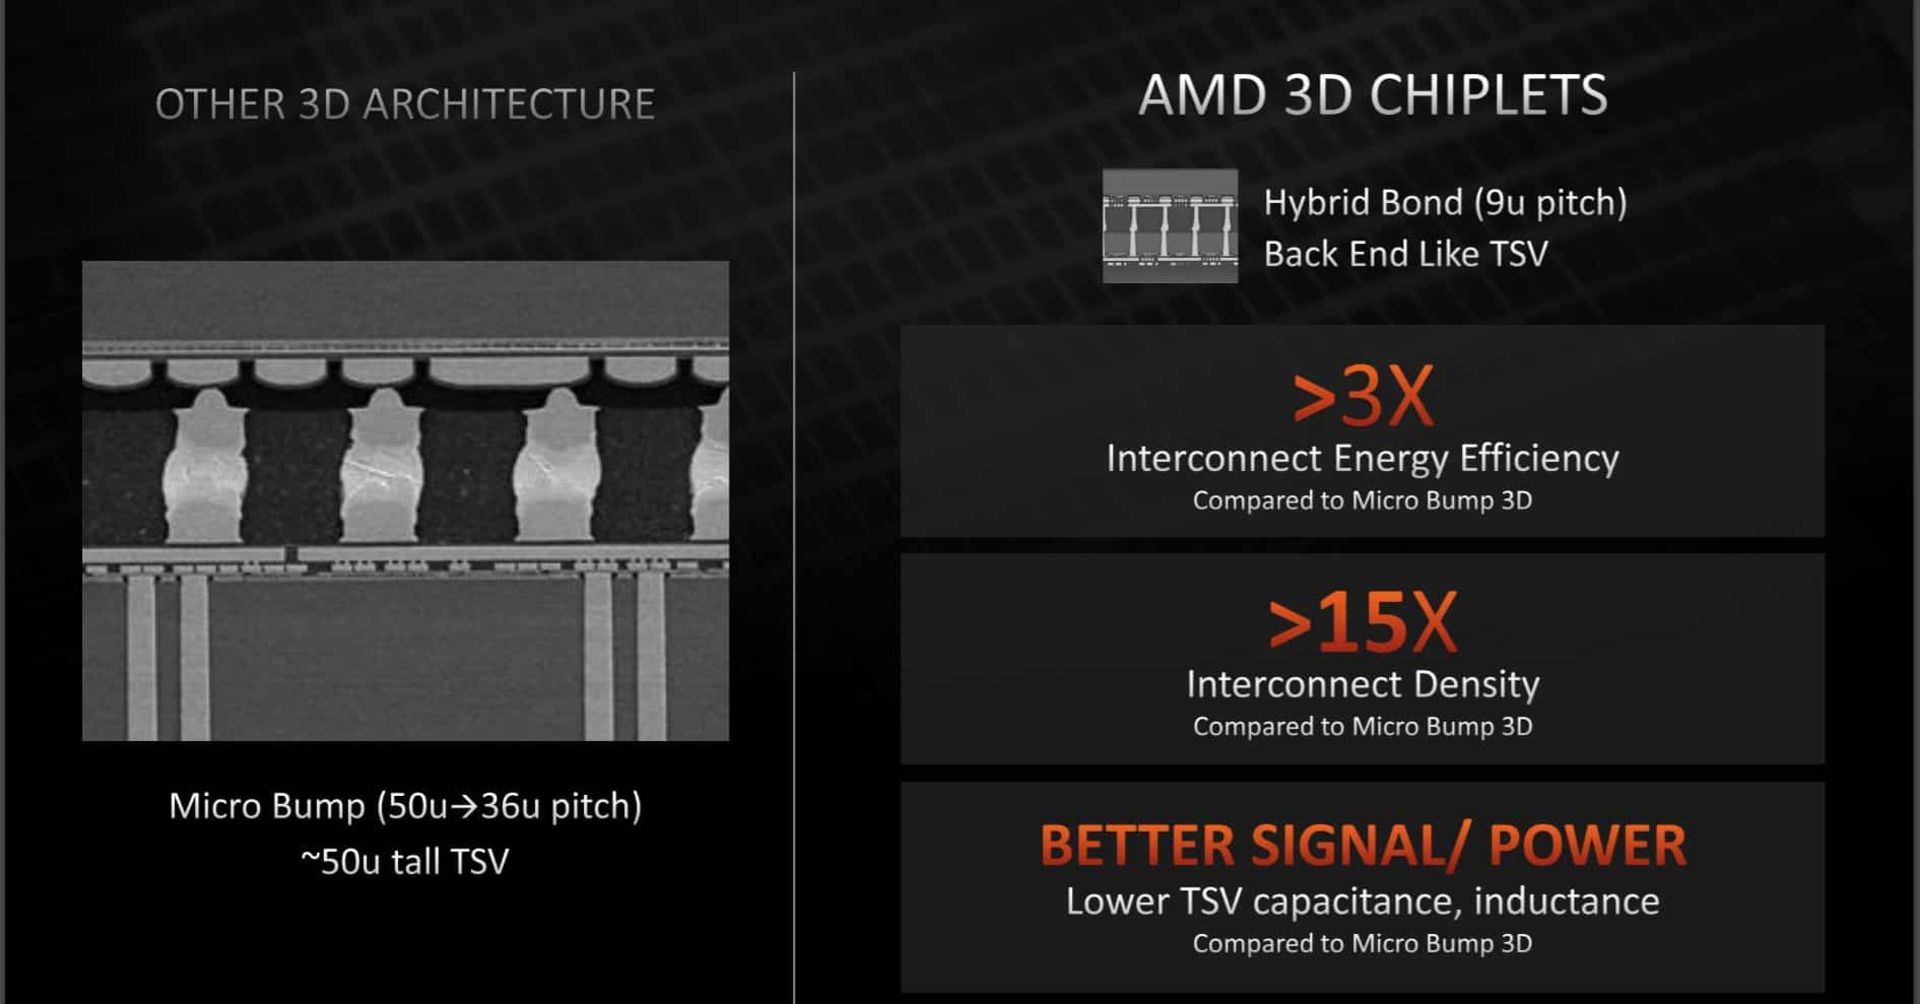 فاصله بین اتصالات در TVS شرکت AMD